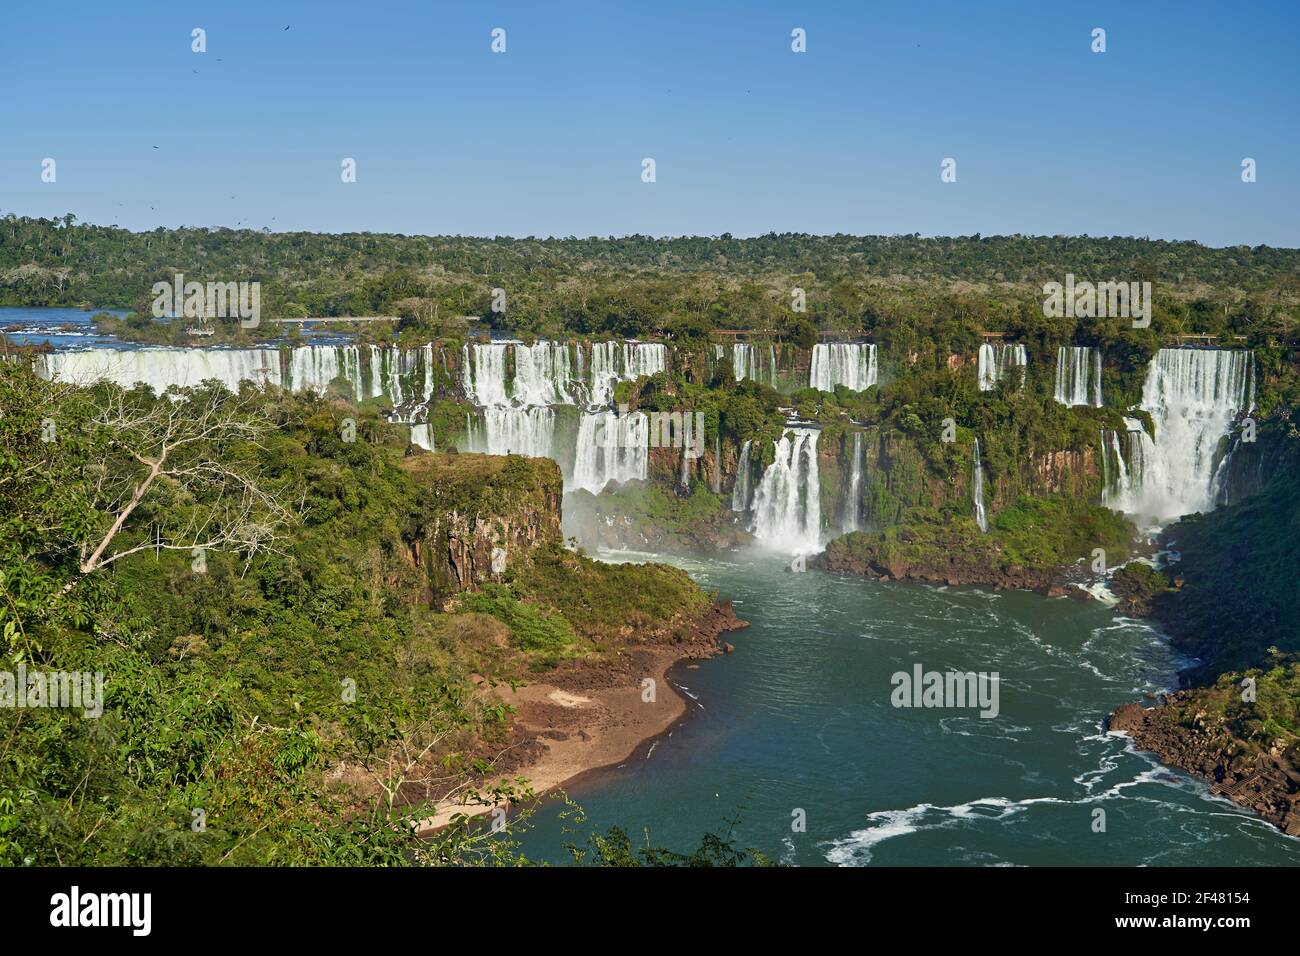 Les chutes d'Iguazu ou les chutes d'Iguaçu, à la frontière de l'Argentine et du Brésil, sont les plus grandes chutes d'eau du monde. Très haute cascade avec eau blanche en b Banque D'Images